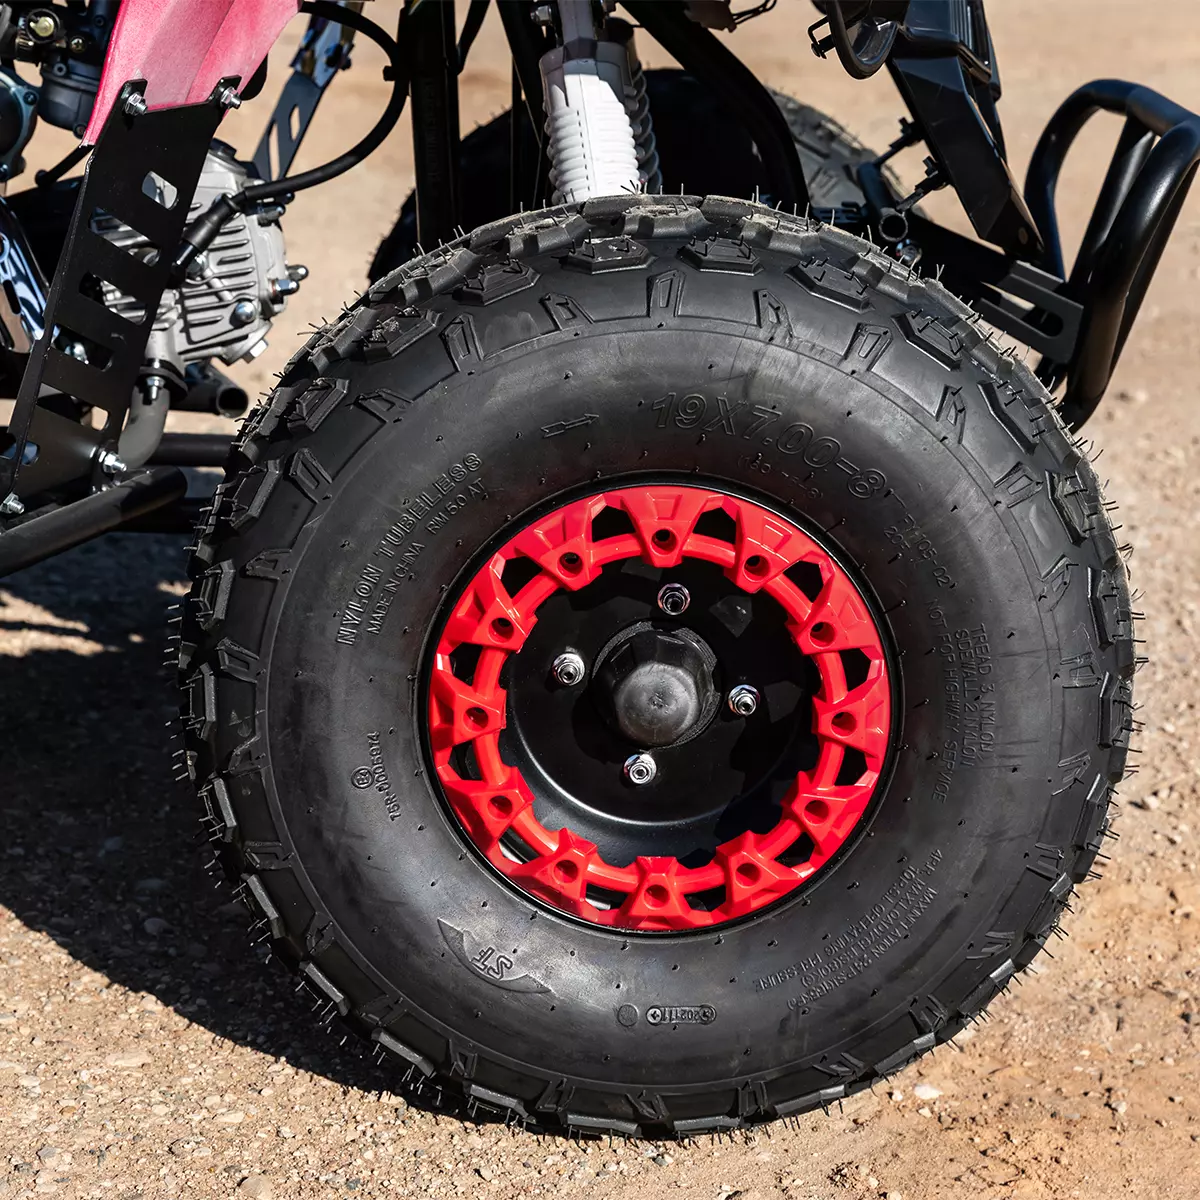 Vergrößerter schwarz-roter Reifen des Kinderquads auf sandigem Boden